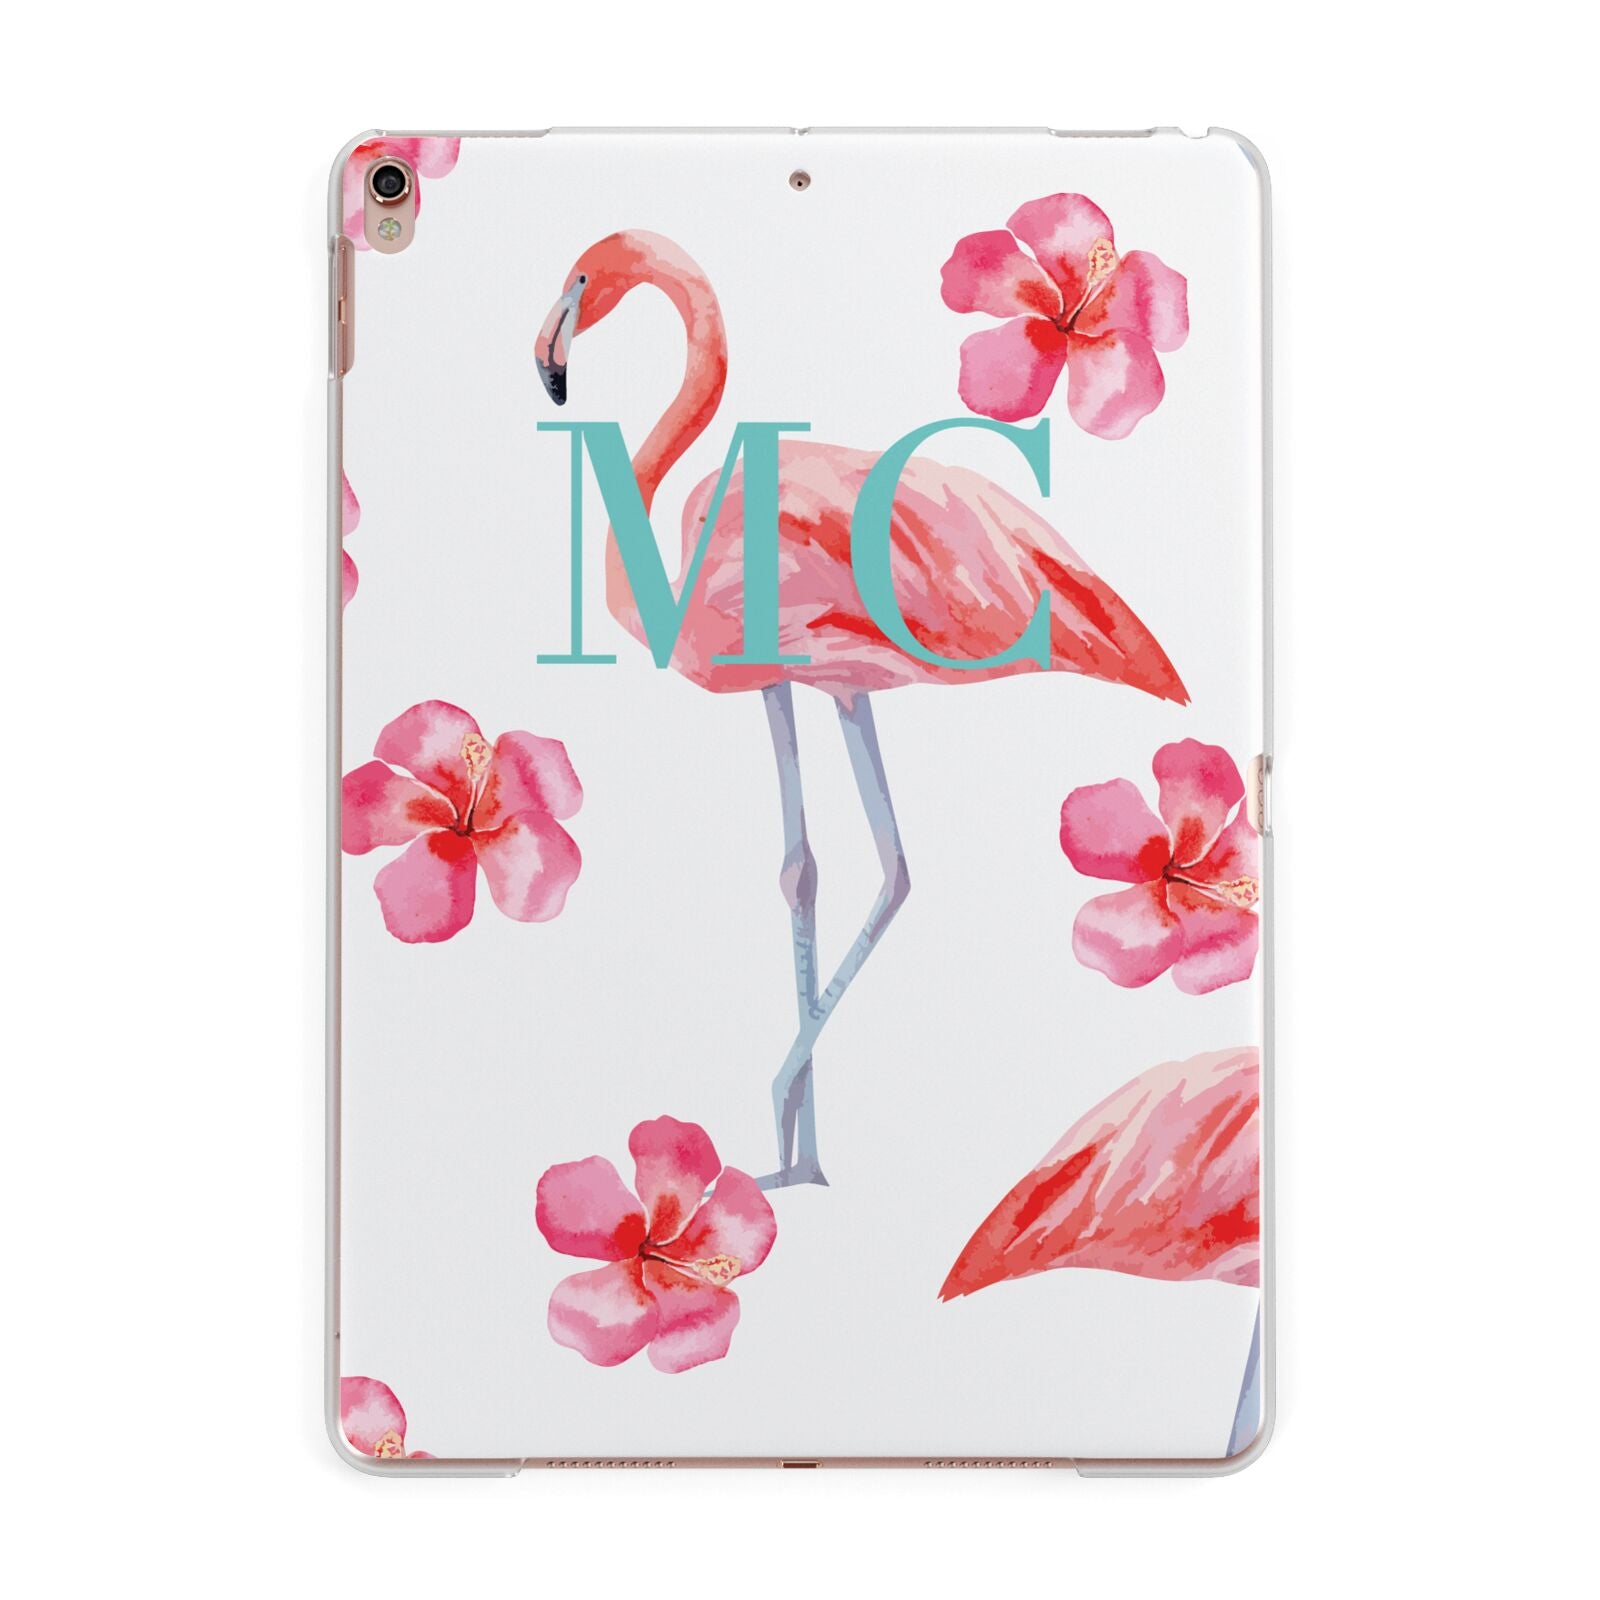 Personalised Initials Flamingo 3 Apple iPad Rose Gold Case